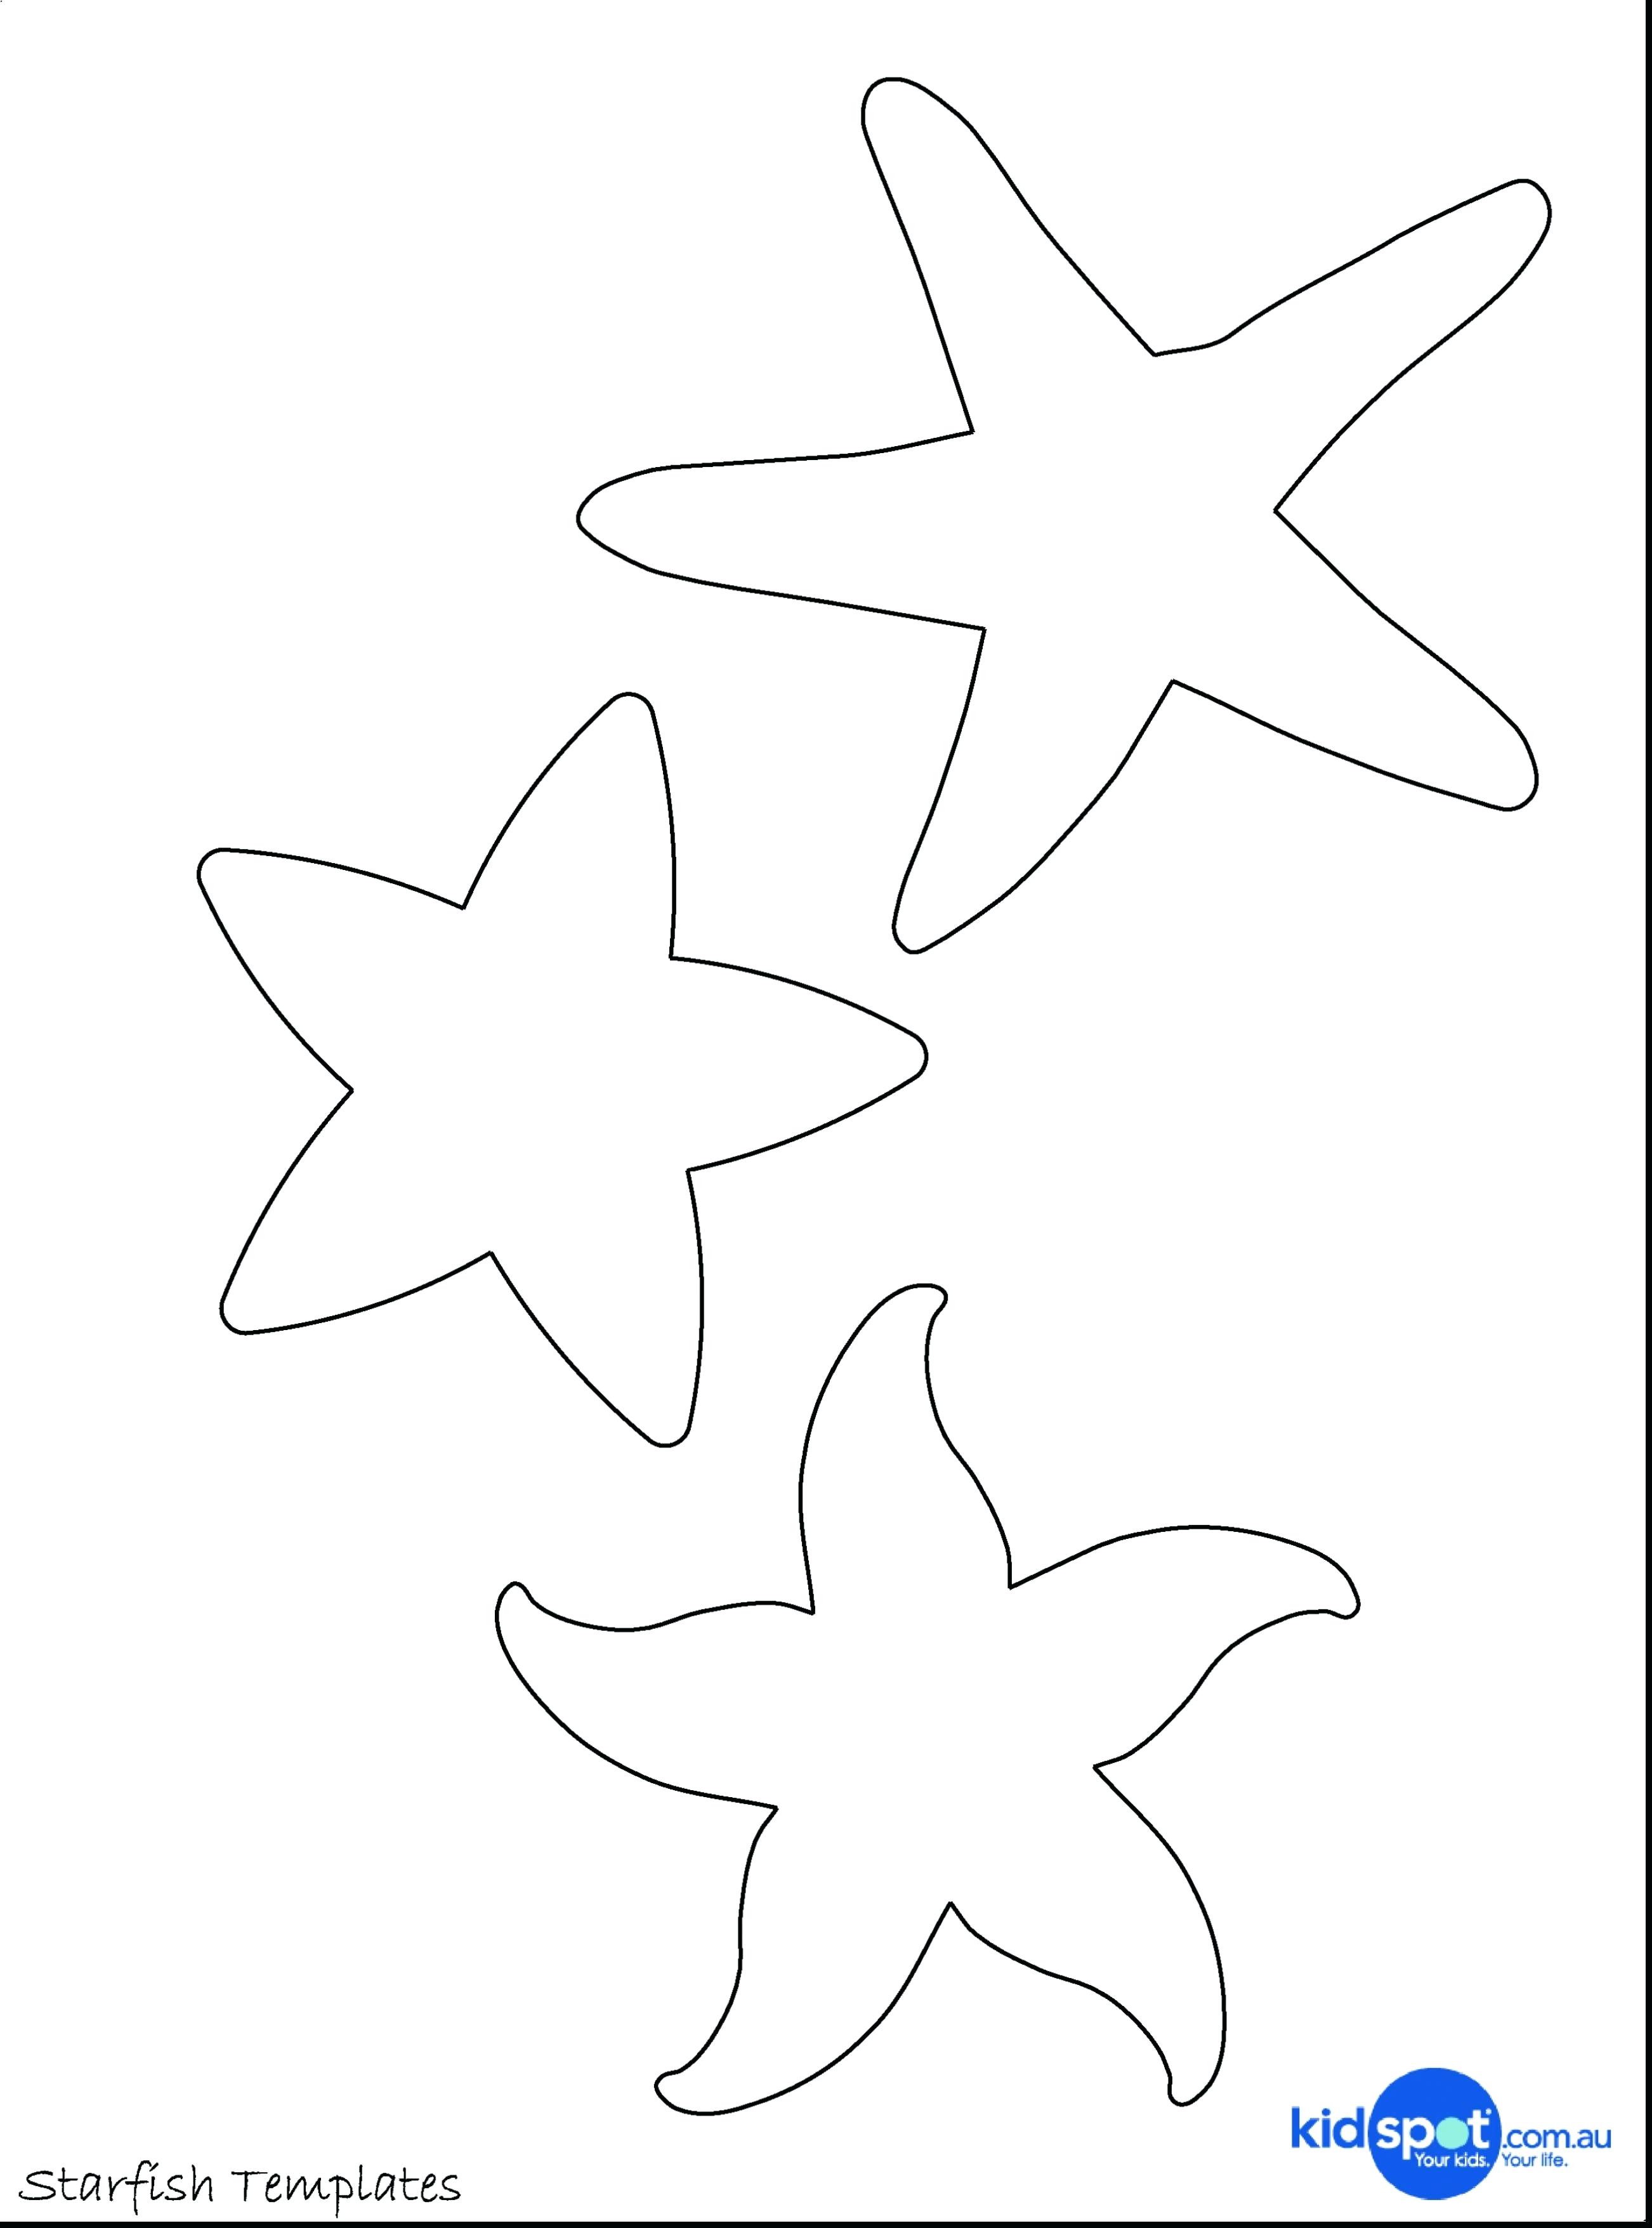 starfish-template-printable-customize-and-print